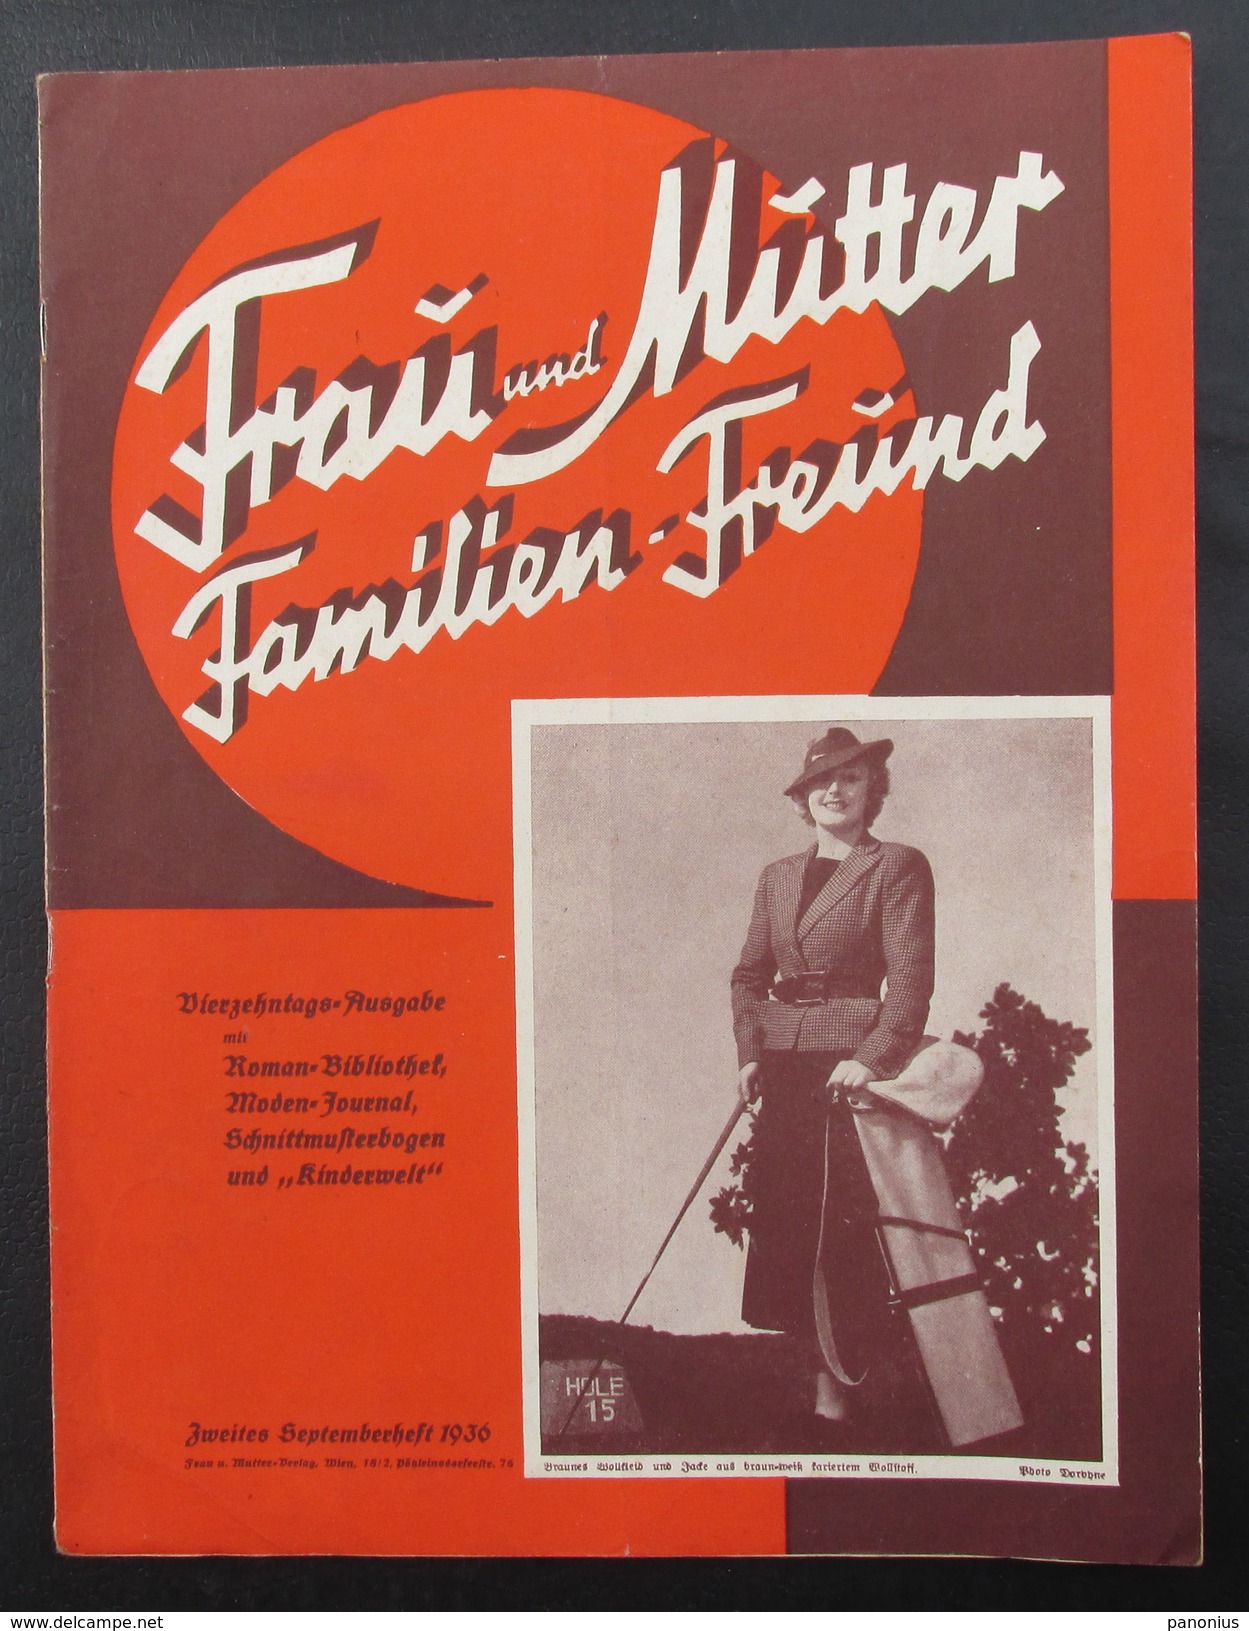 FRAU UND MUTTER FAMILIEN FREUND - Magazine, 1936. Wien, Austria - Lifestyle & Mode